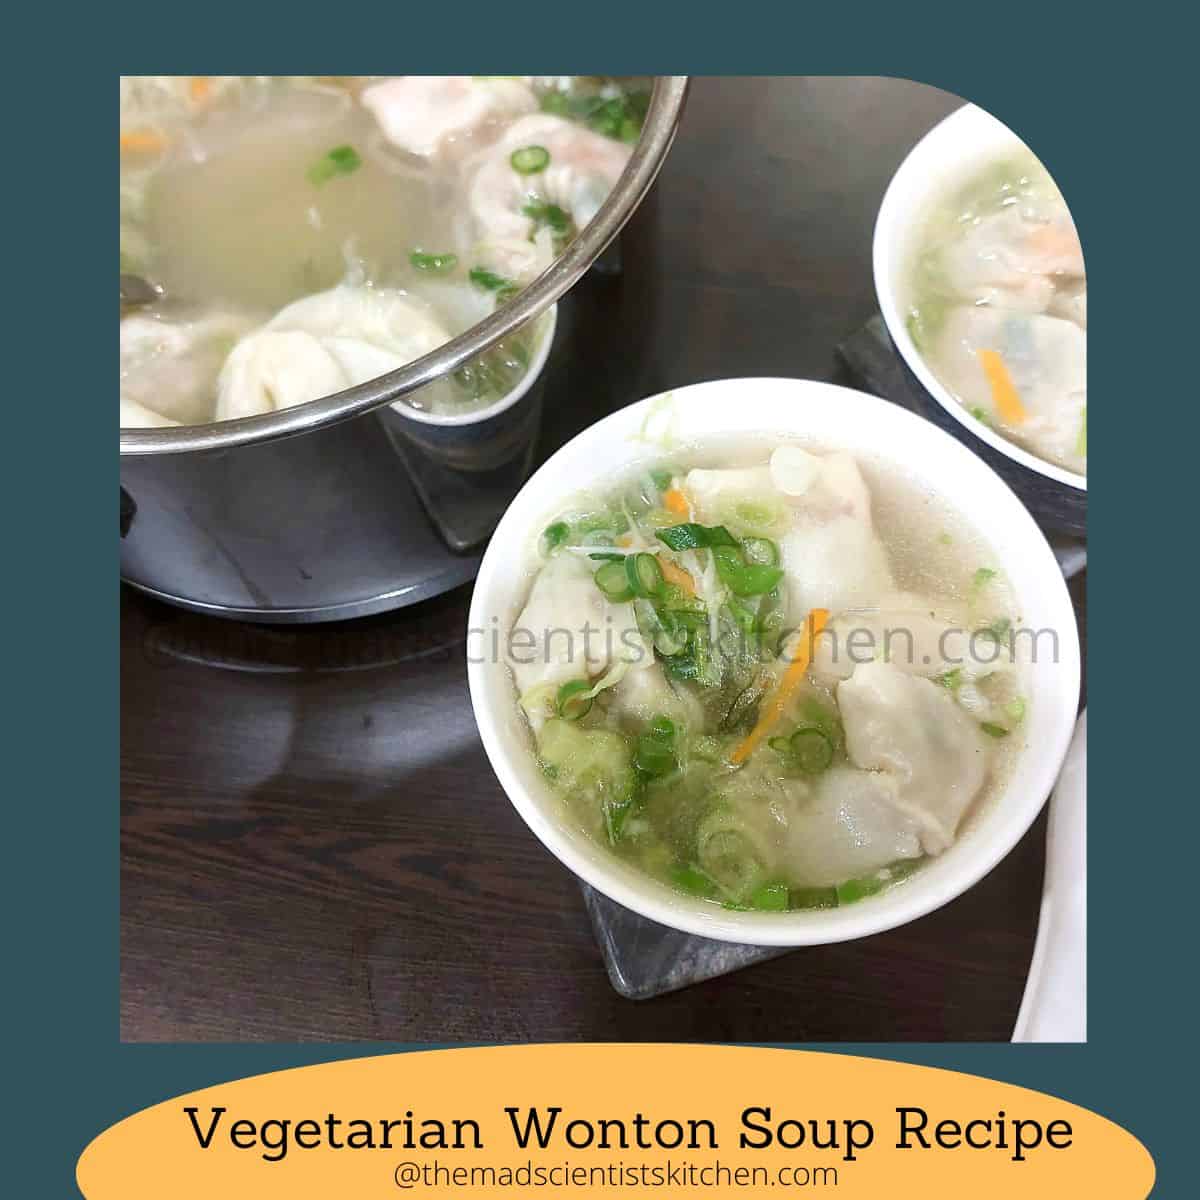 Vegetarian Wonton Soup Recipe,Wonton,Soup,Winton Soup